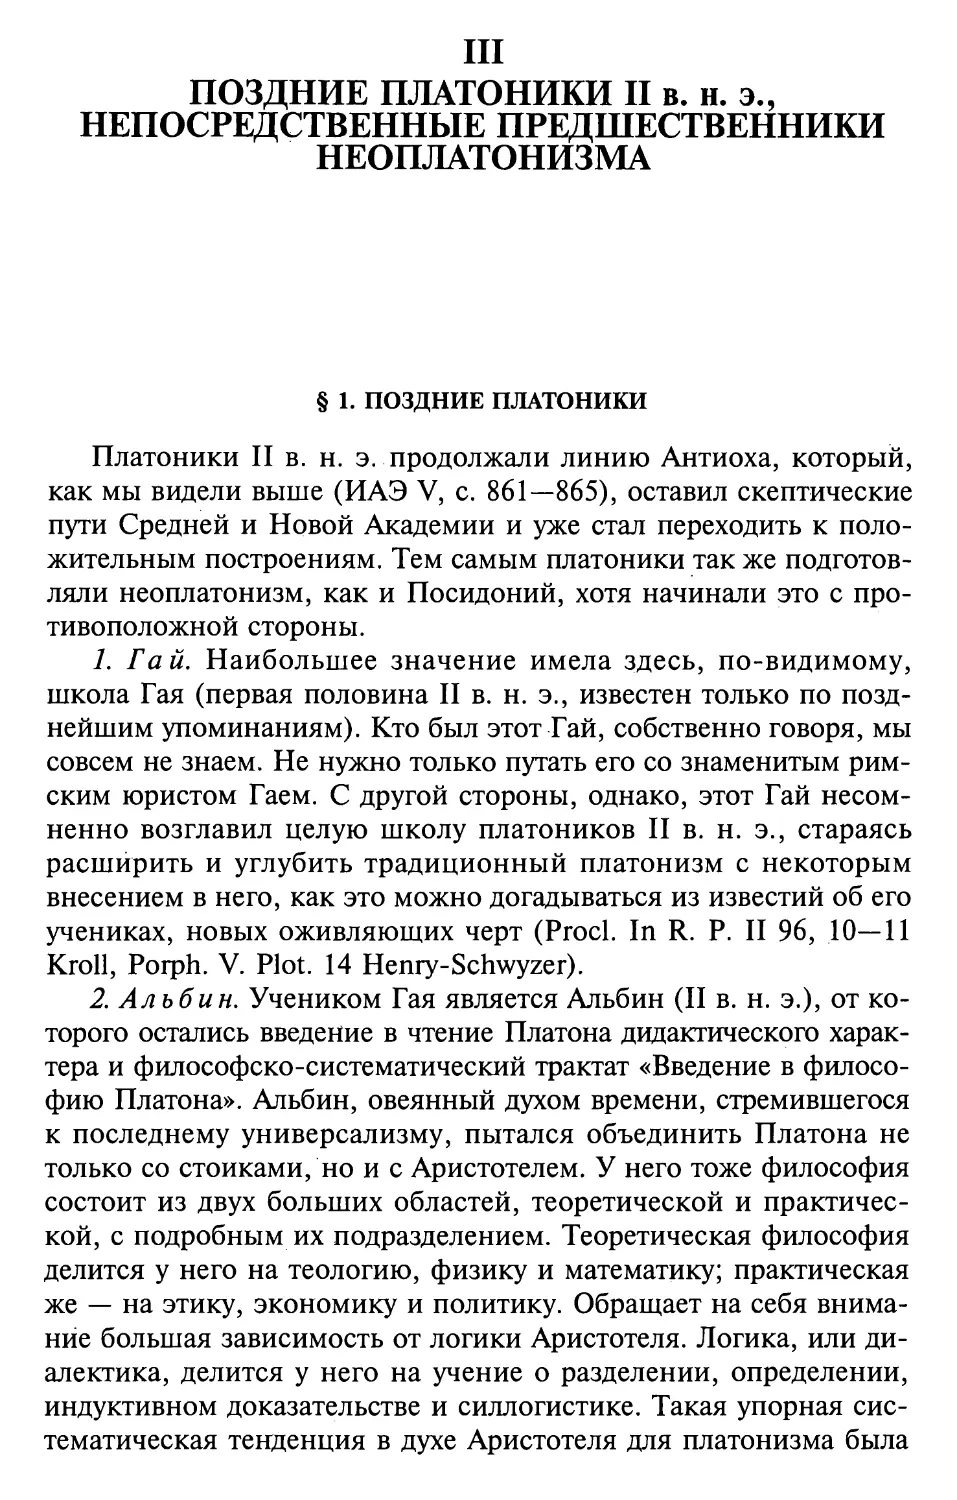 III. Поздние платоники II в. н. э., непосредственные предшественники неоплатонизма
2. Альбин